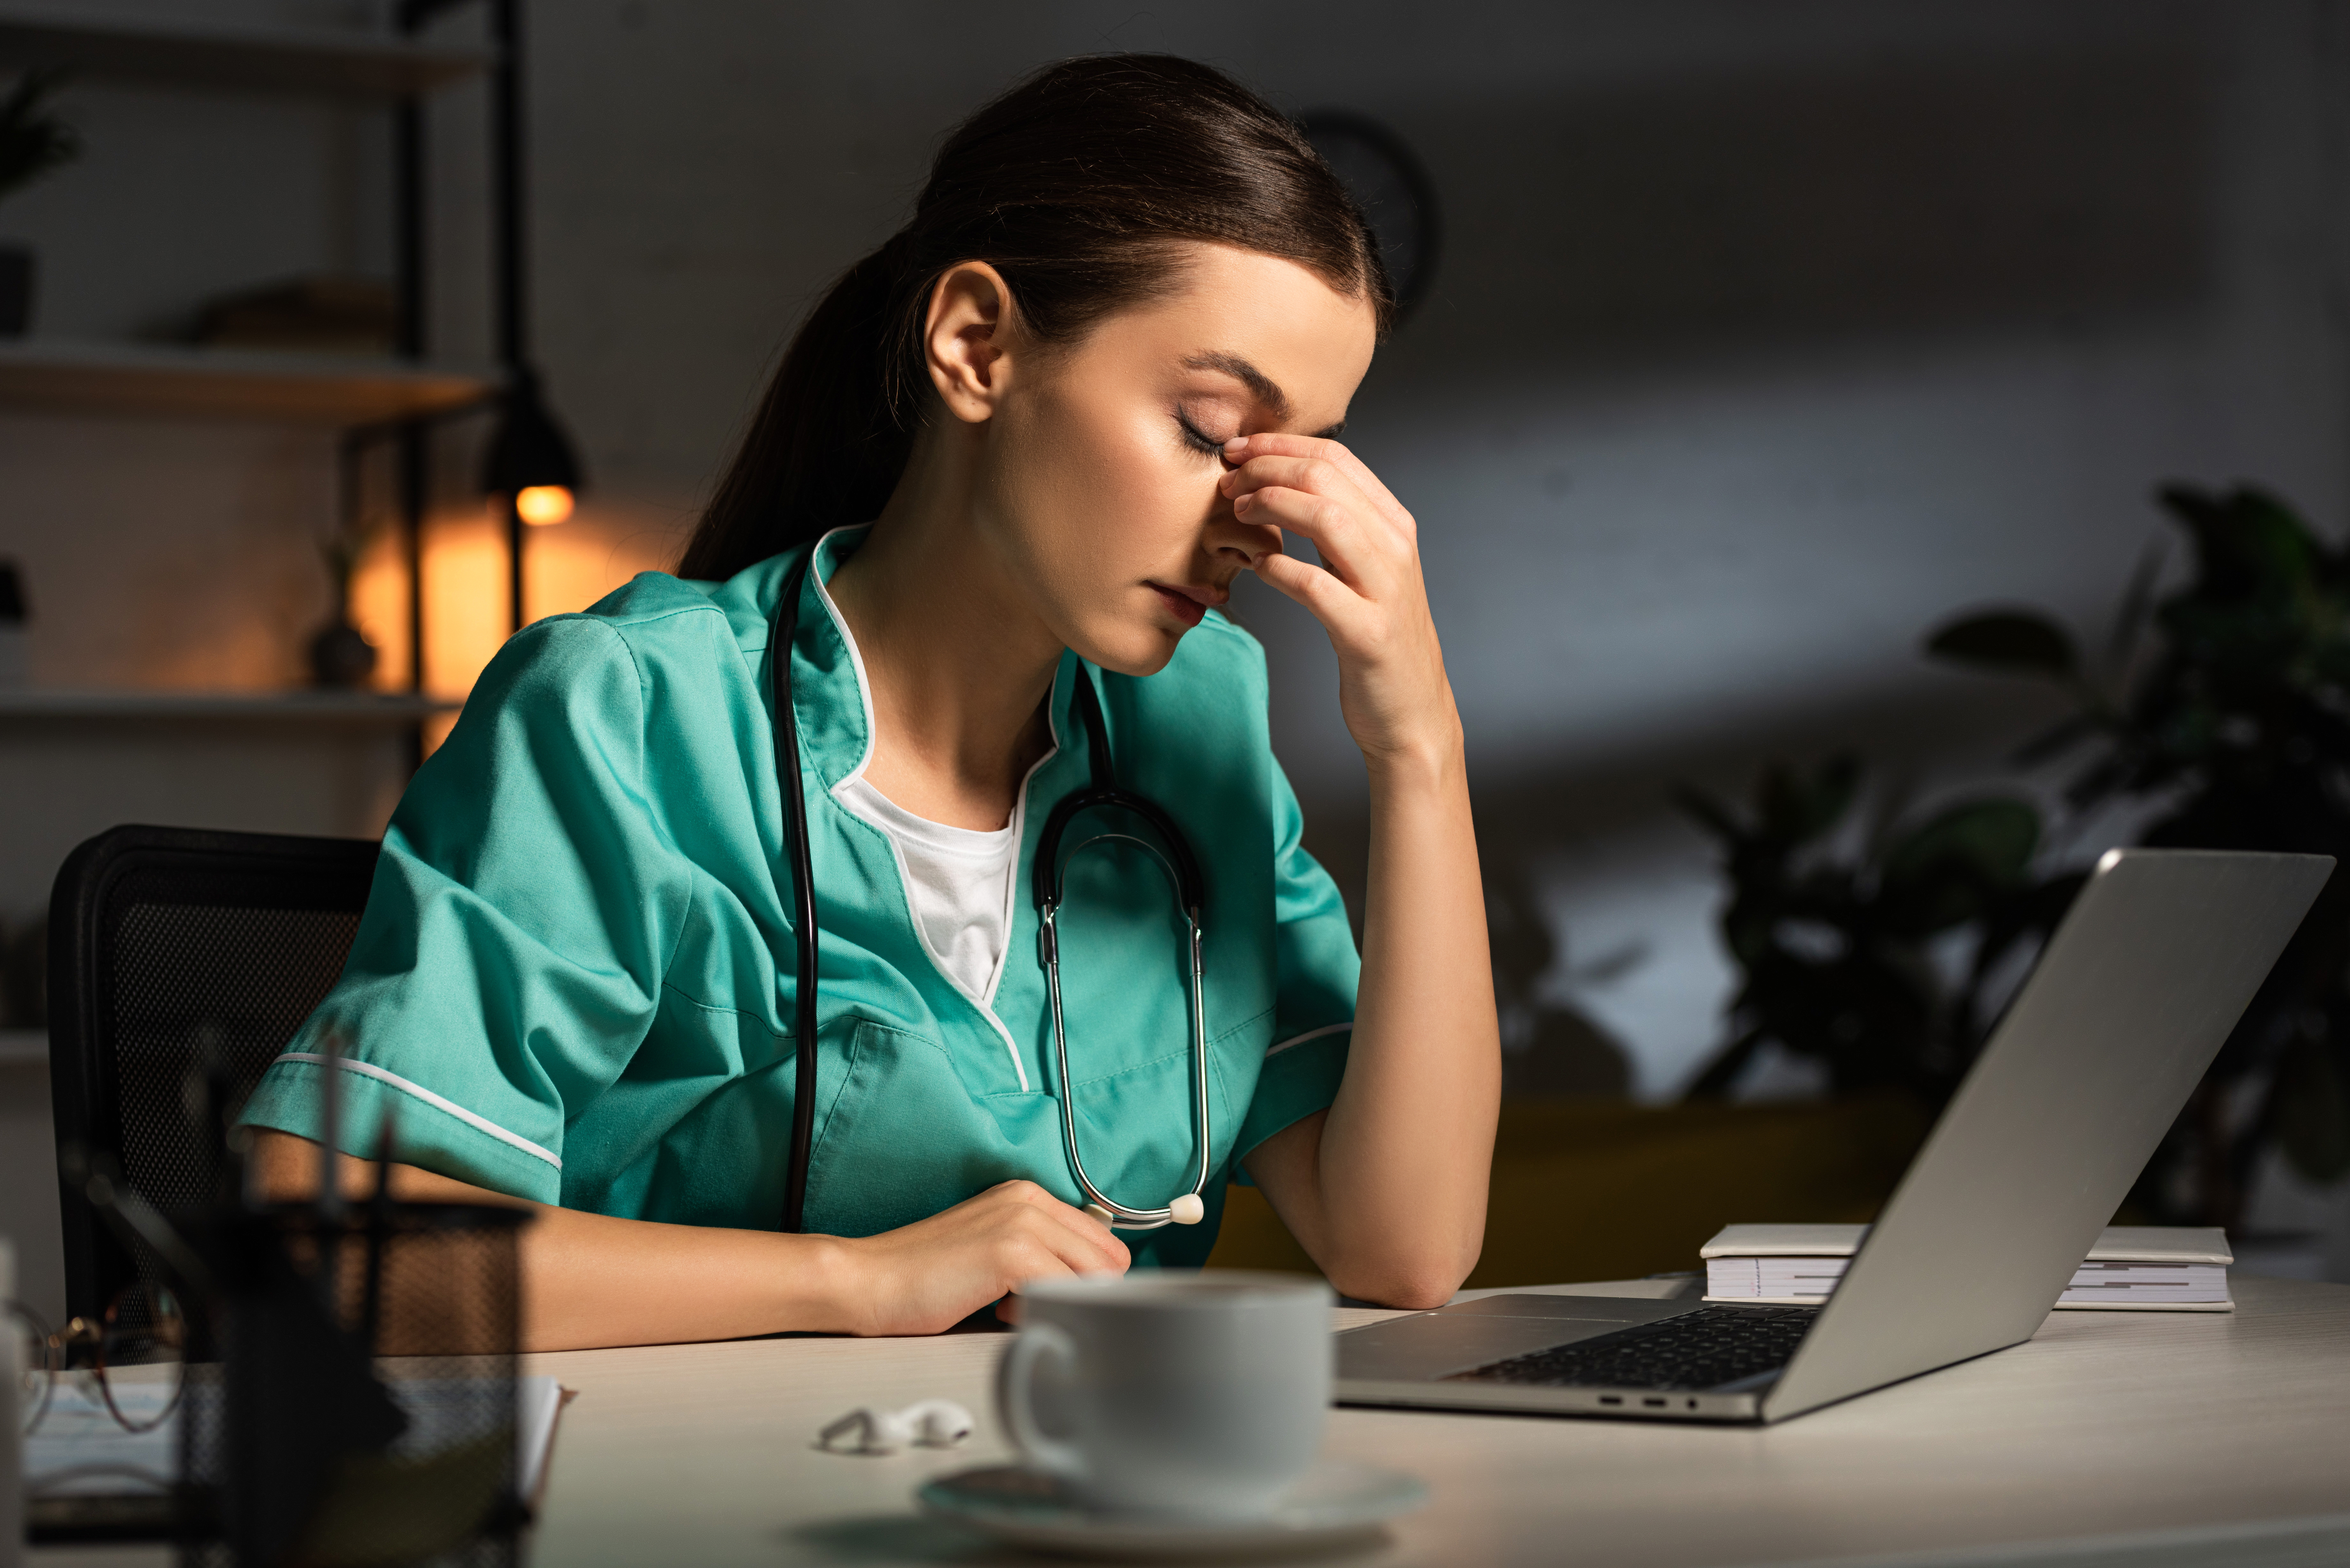 Enfermera cansada con uniforme sentada a la mesa durante el turno de noche | Fuente: Shutterstock.com